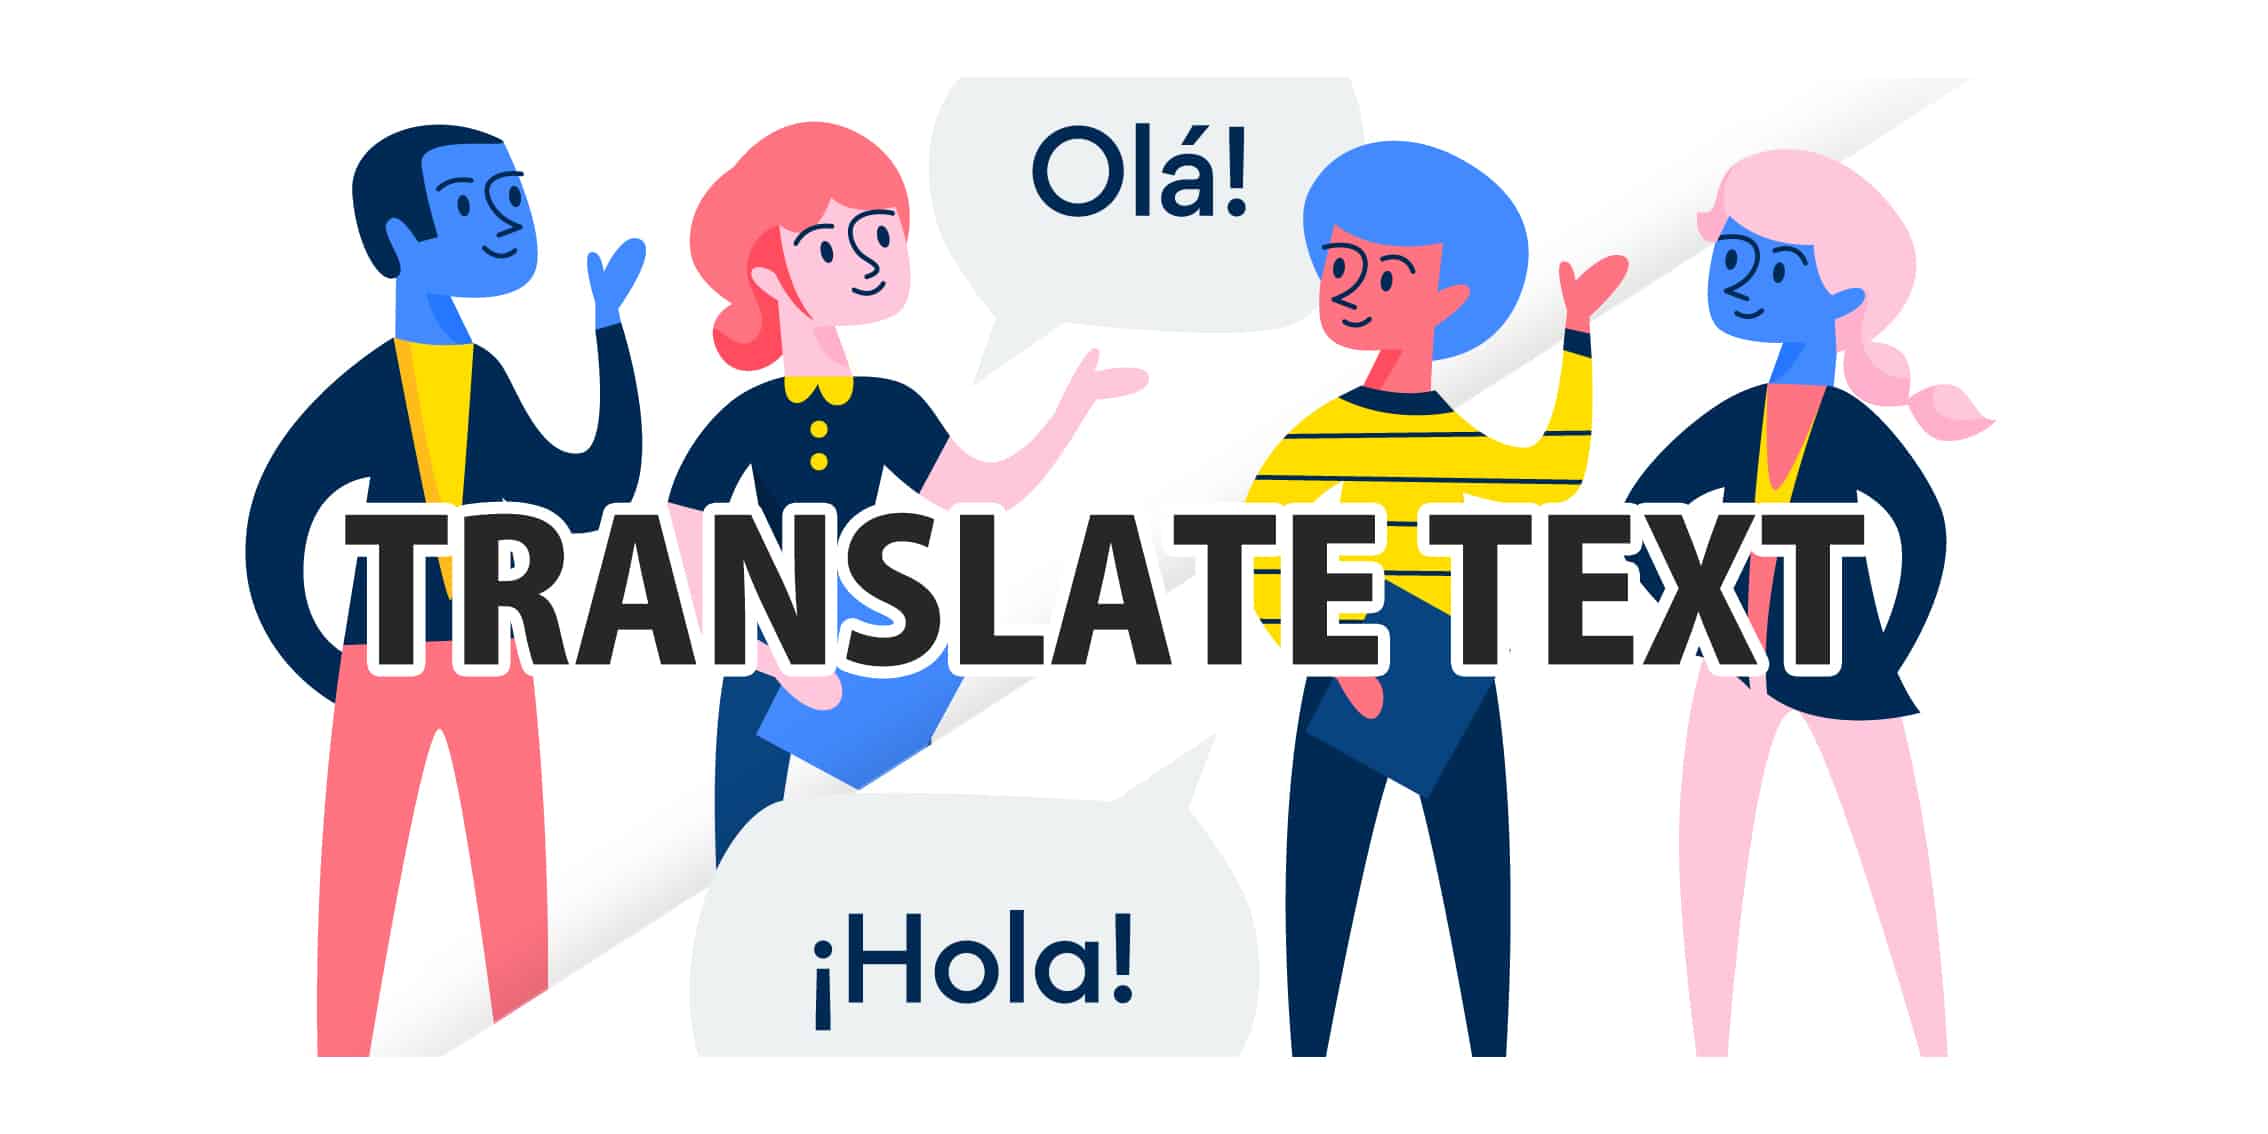 23701Translation (Spanish to Portuguese)